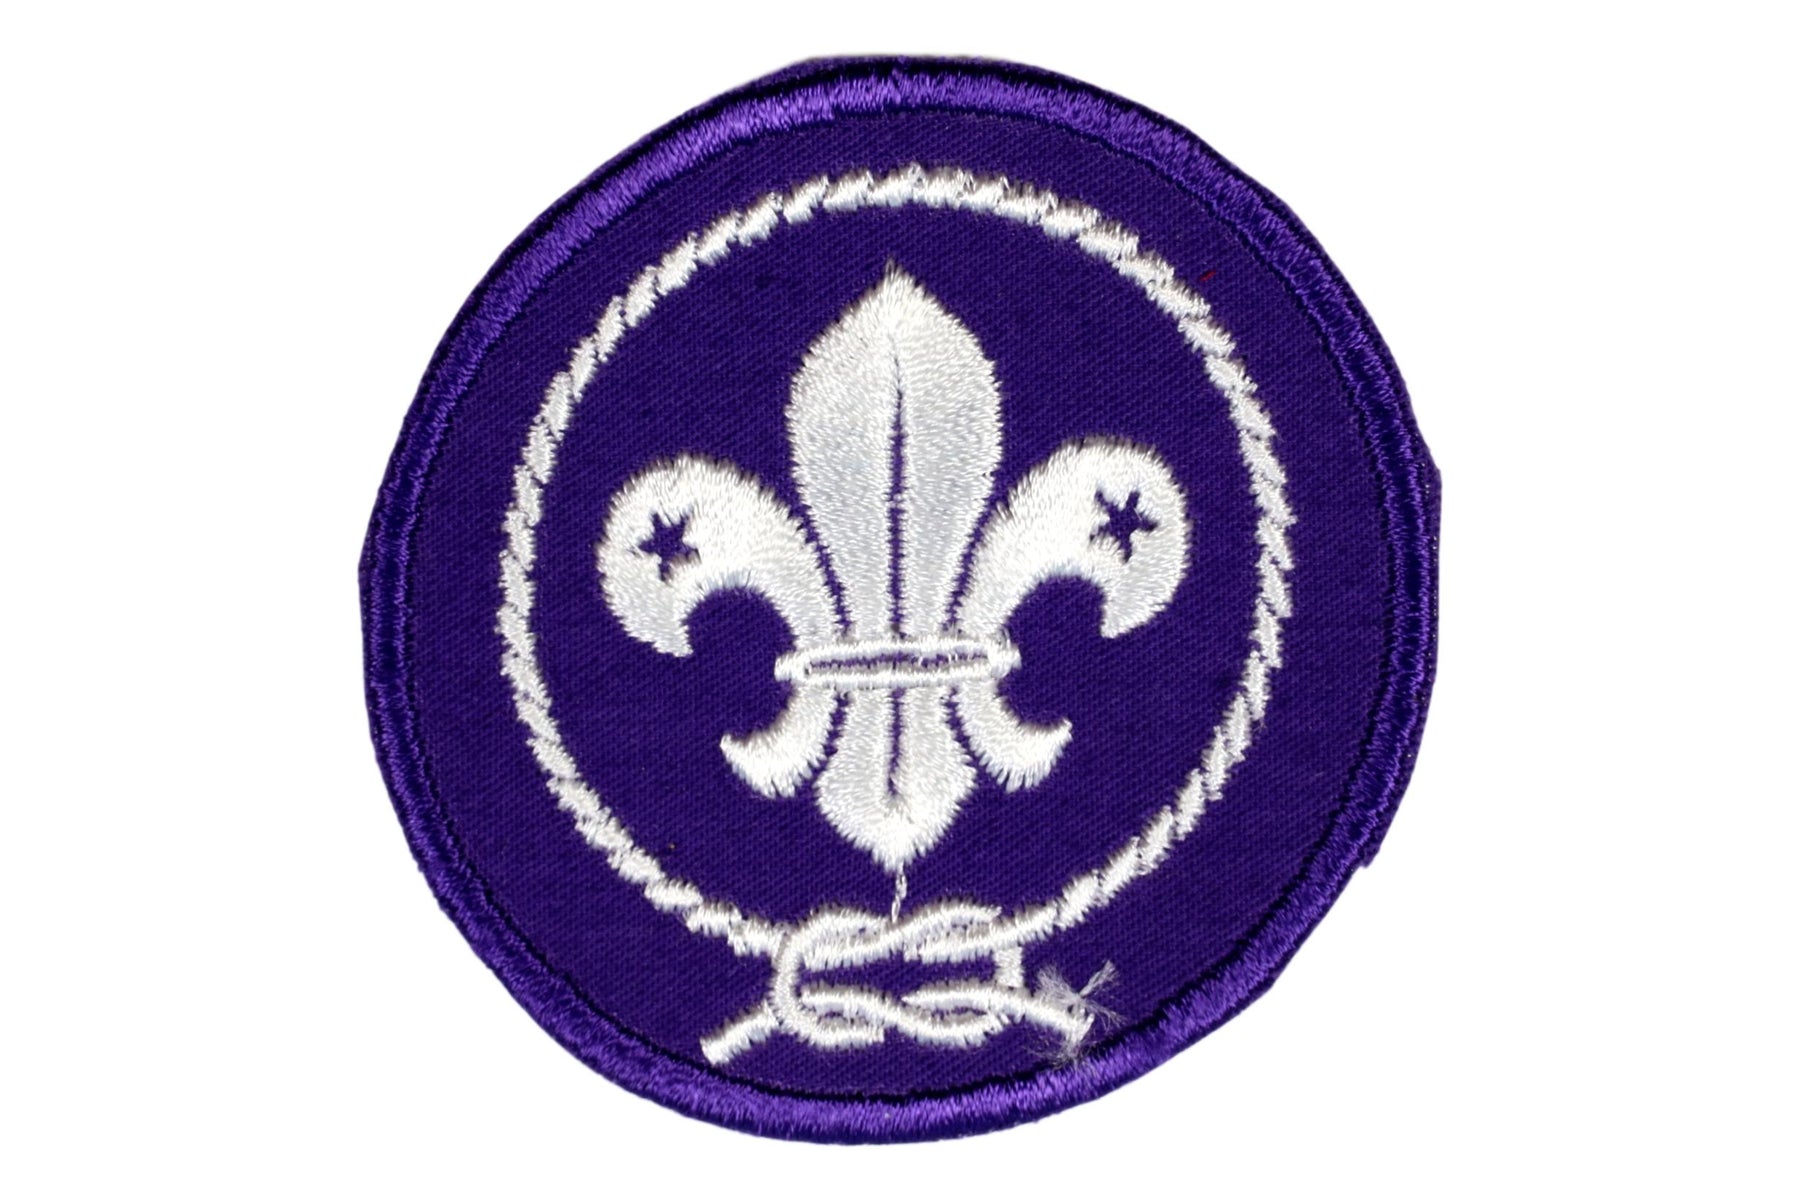 Boy Scout World Crest Patch 2 3/4" (7cm)